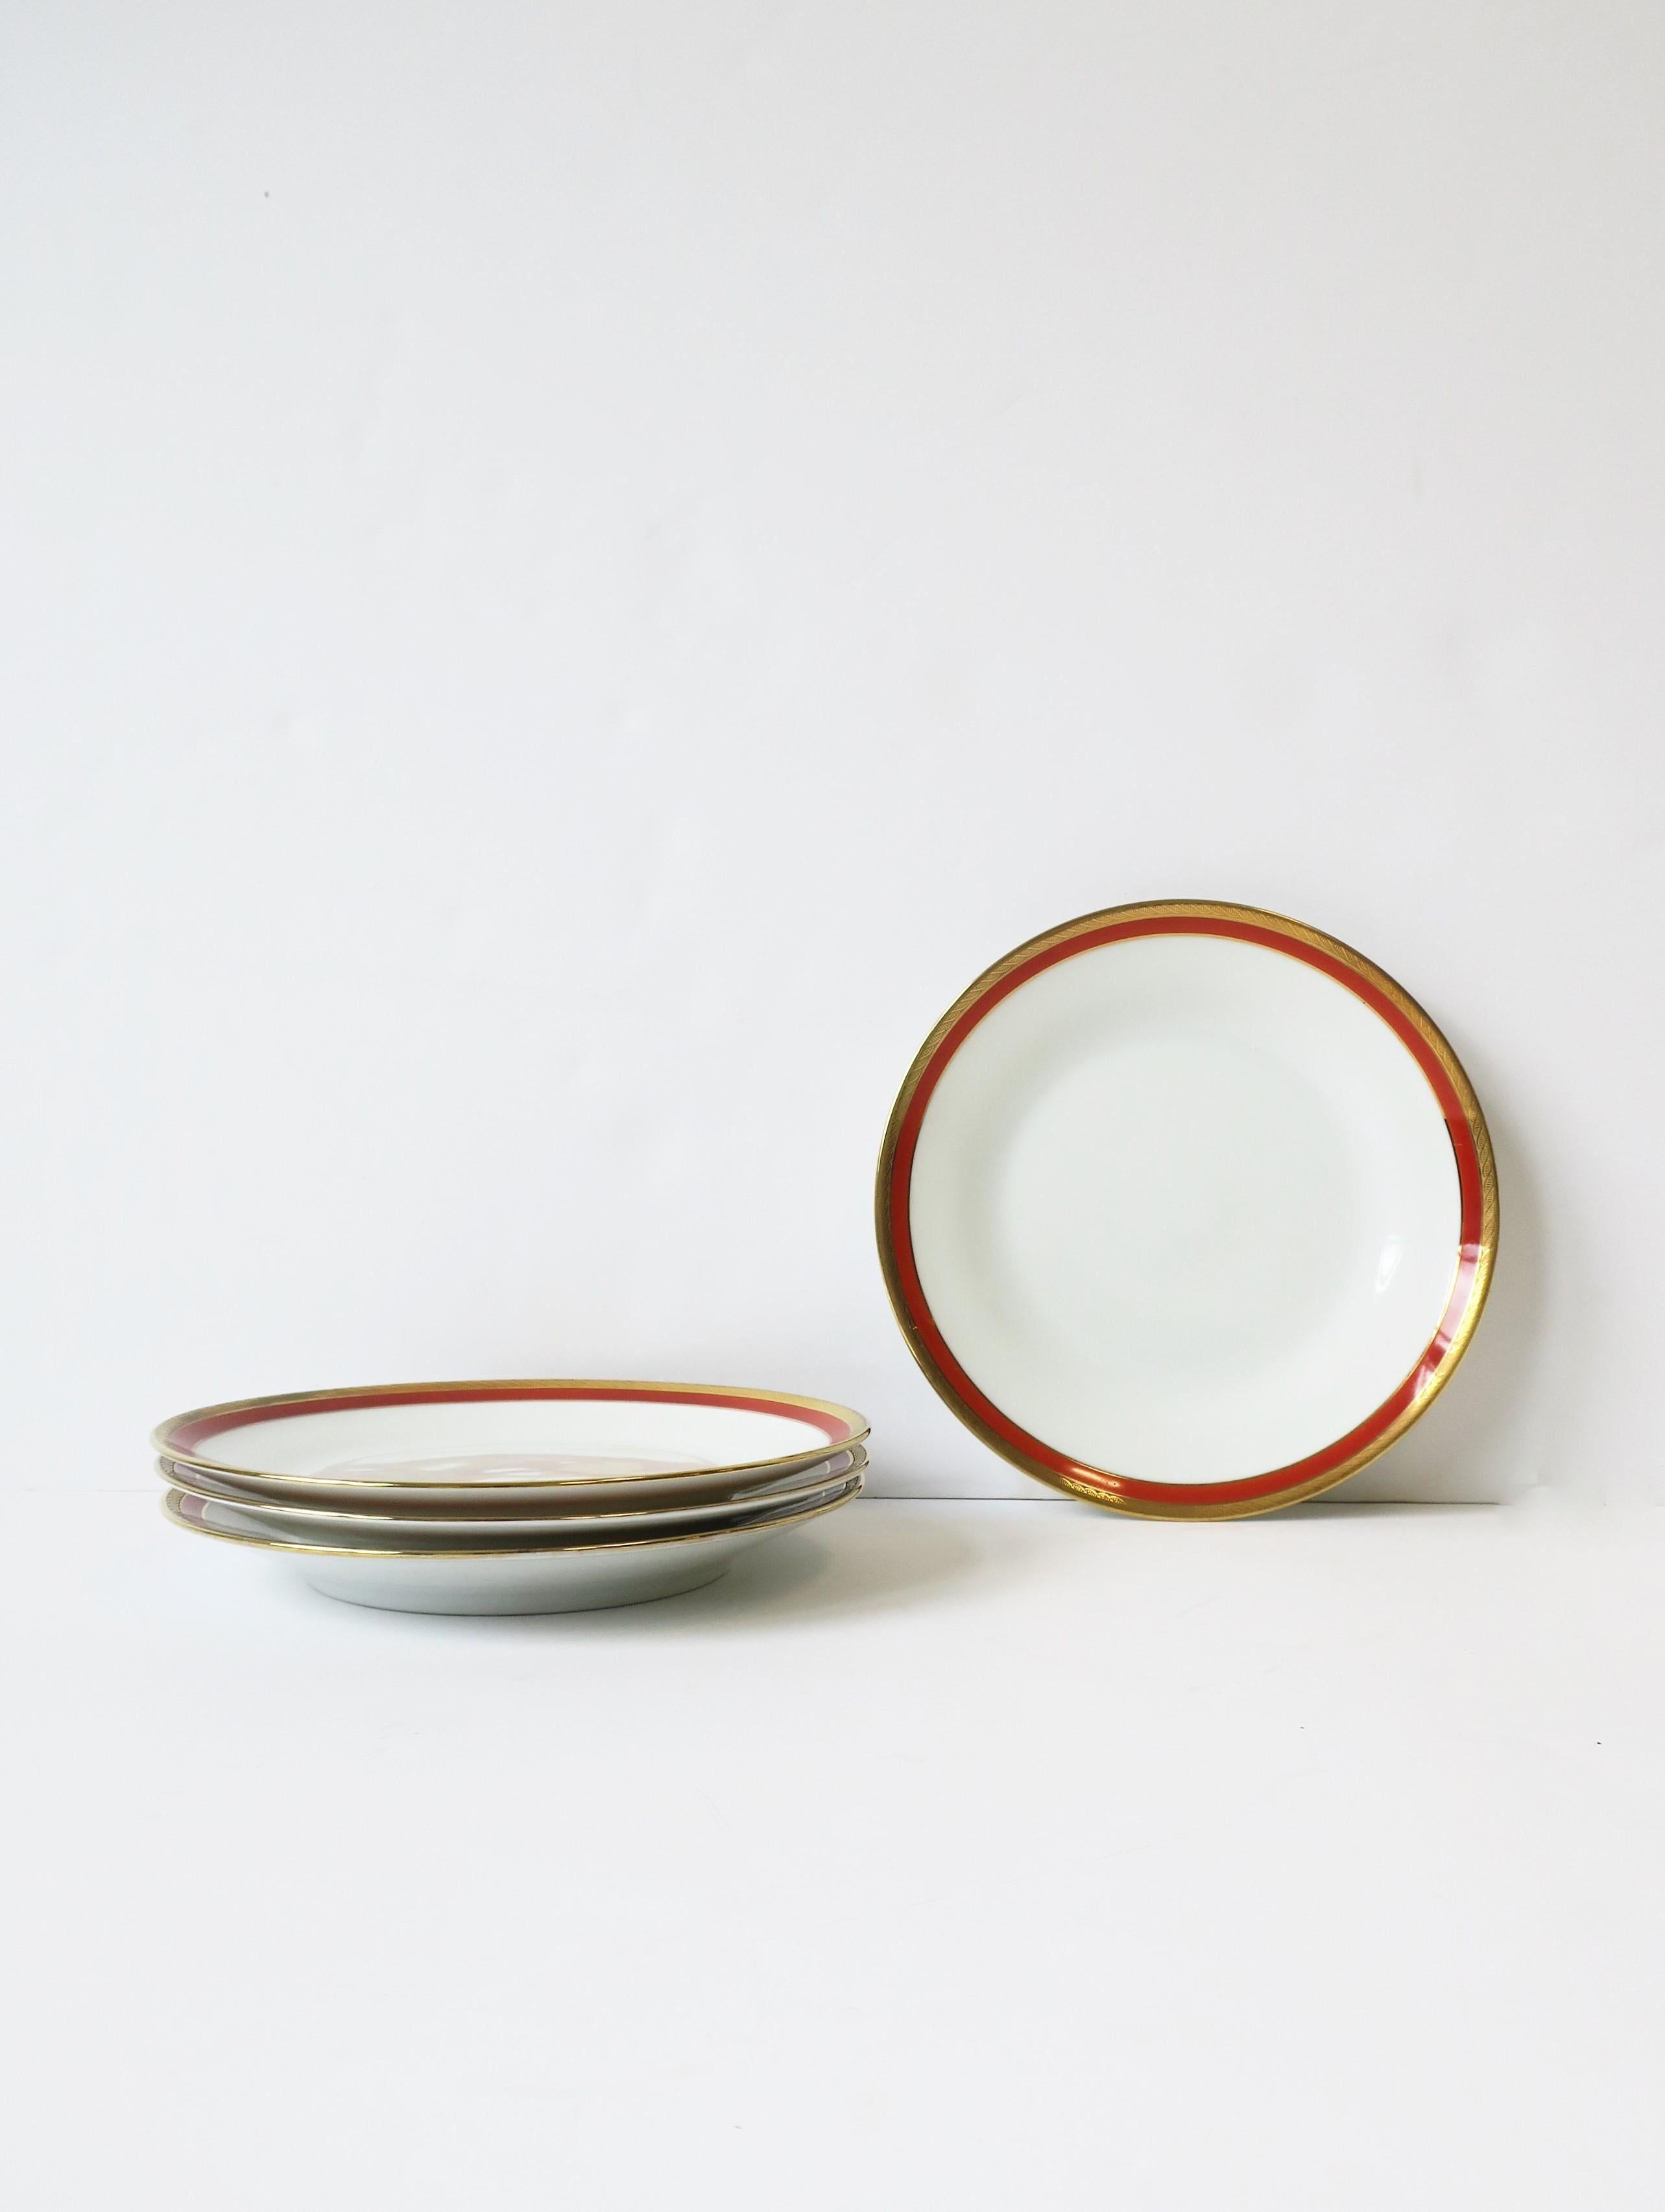 Glazed Richard Ginori Designer Porcelain Italian White Gold & Orange Plates, Set of 4